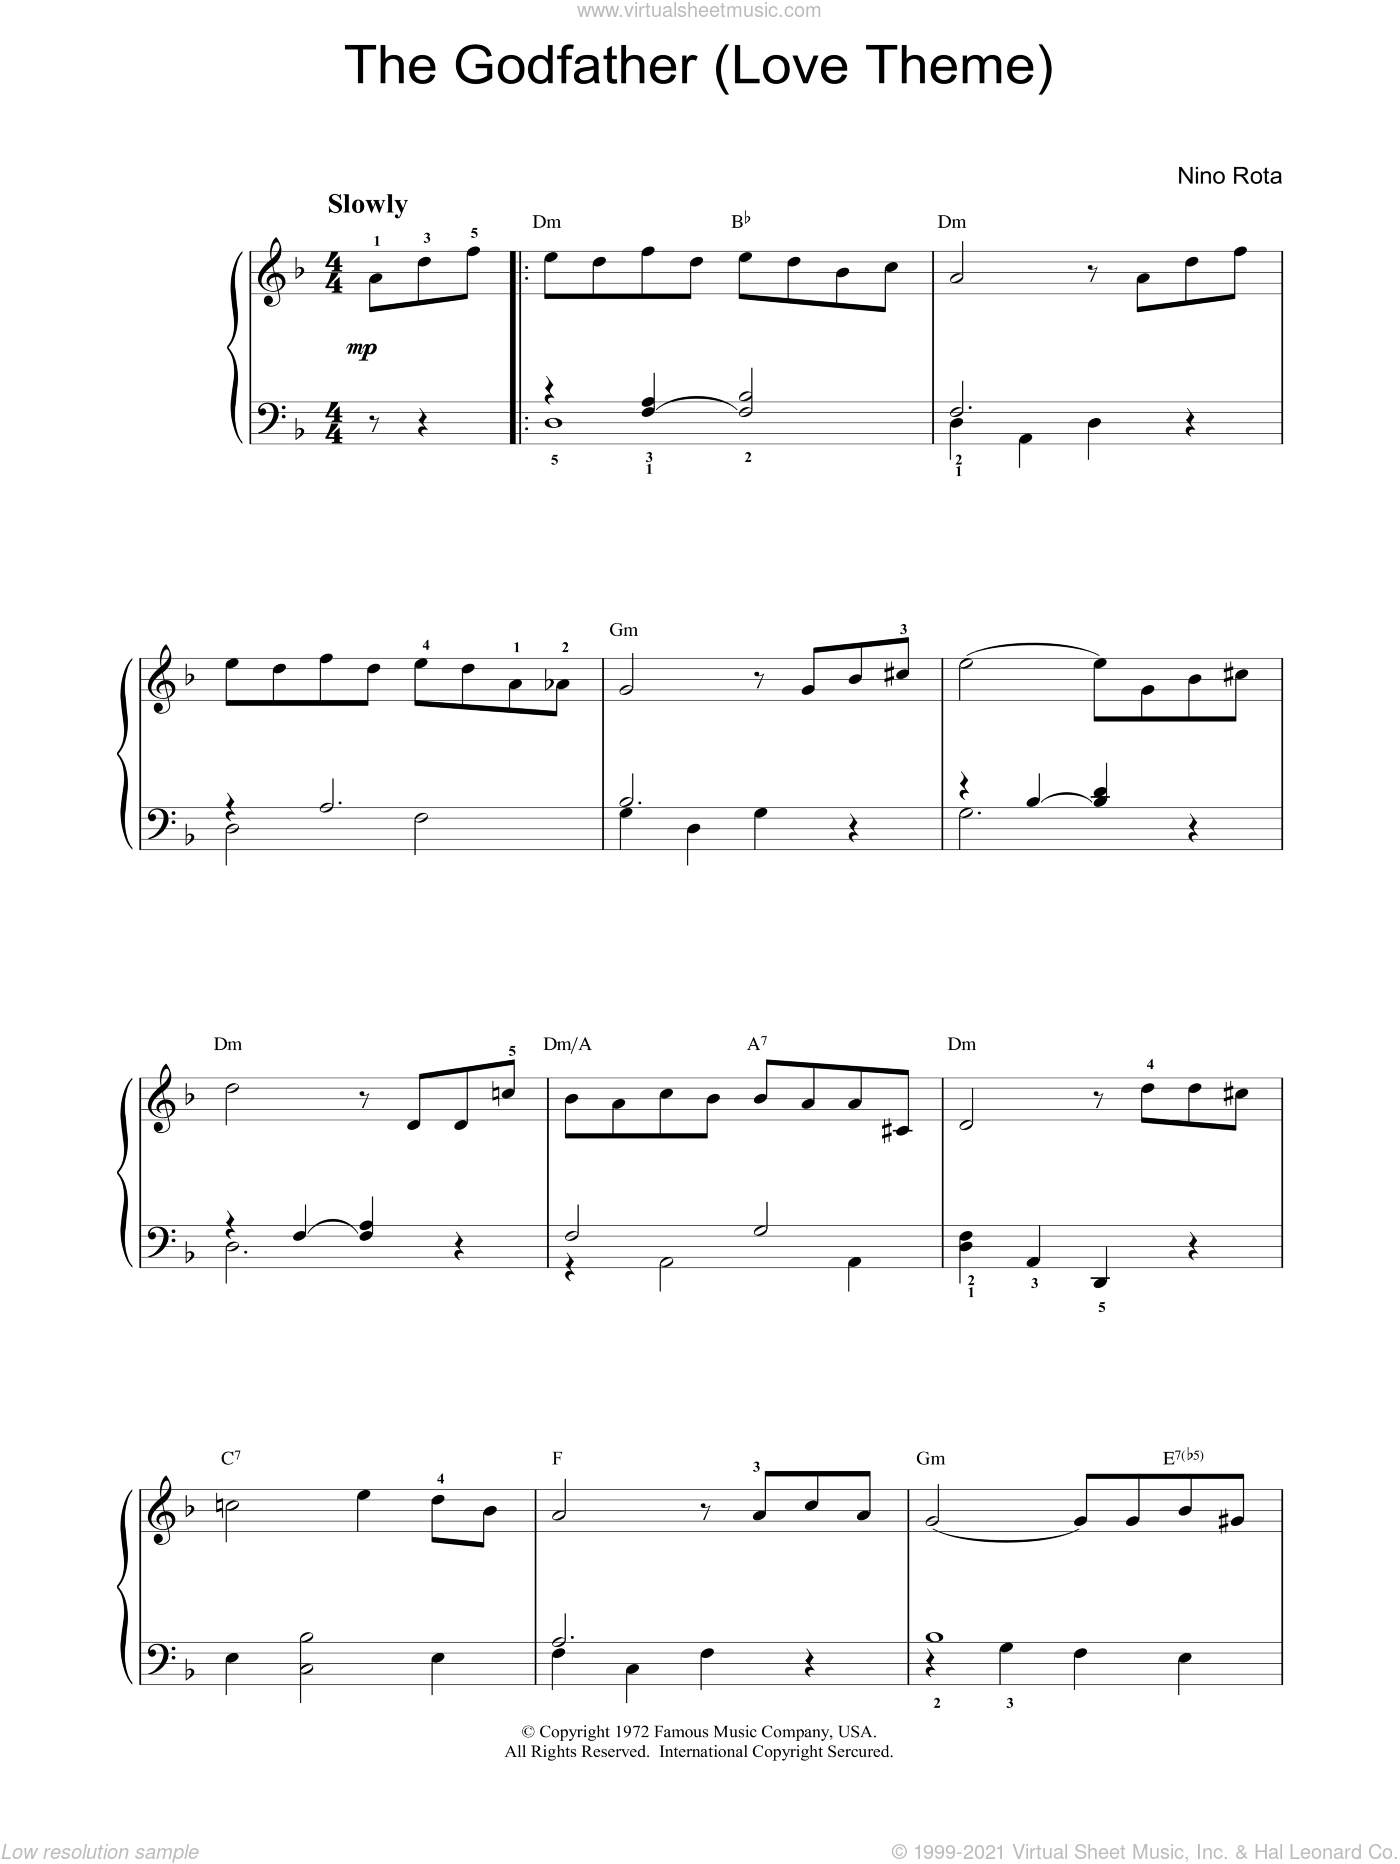 The (Love Theme), (intermediate) music for piano solo